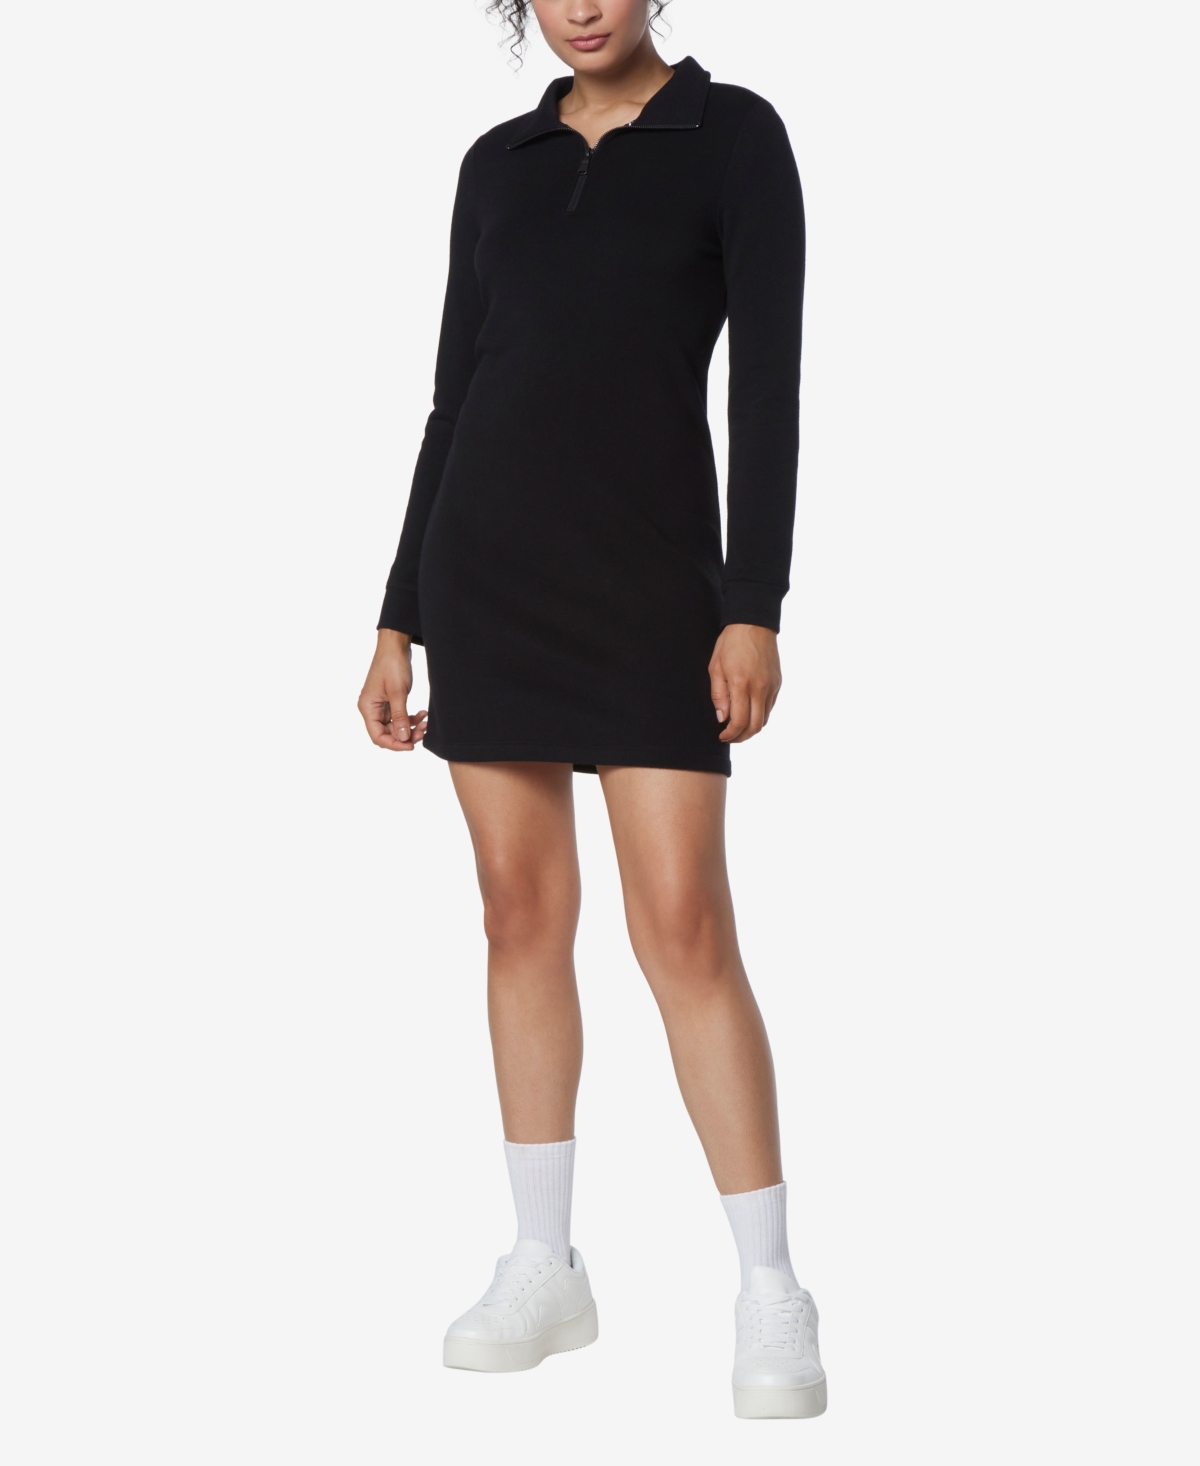 Andrew Marc Sport Women's Long Sleeve Quarter Zip Sweatshirt Dress - Black